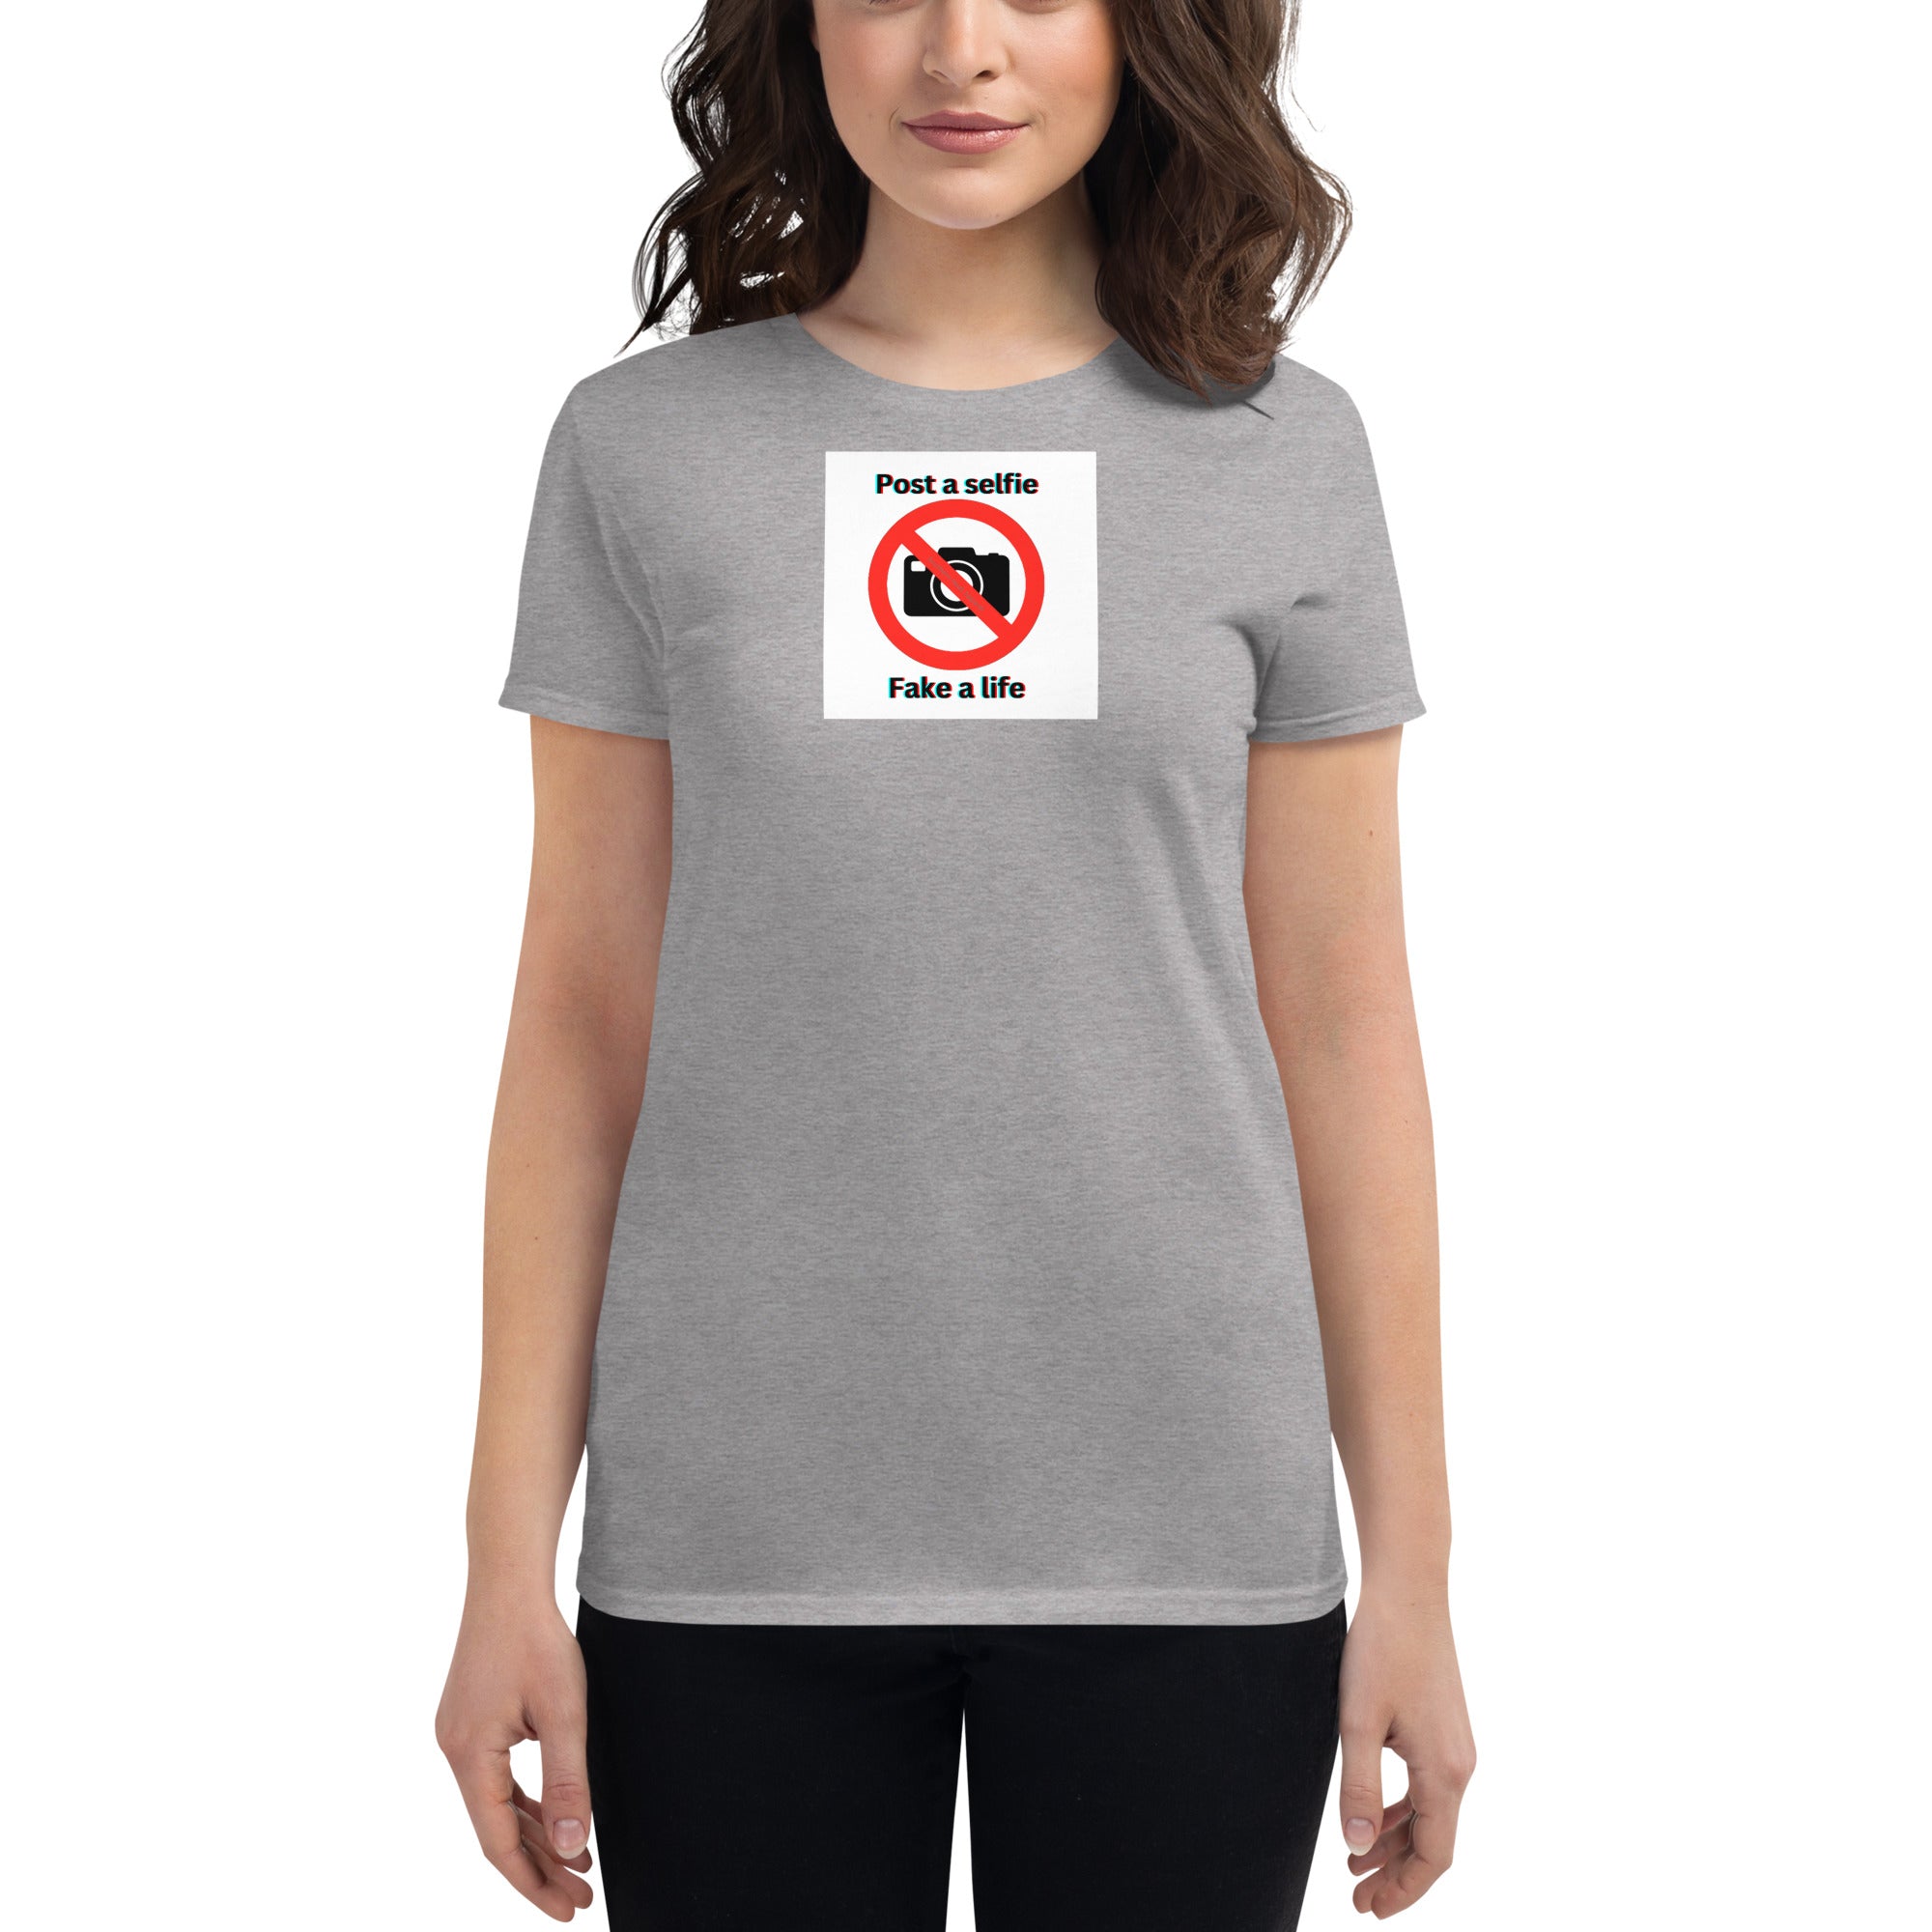 Post a selfie-Women's short sleeve t-shirt